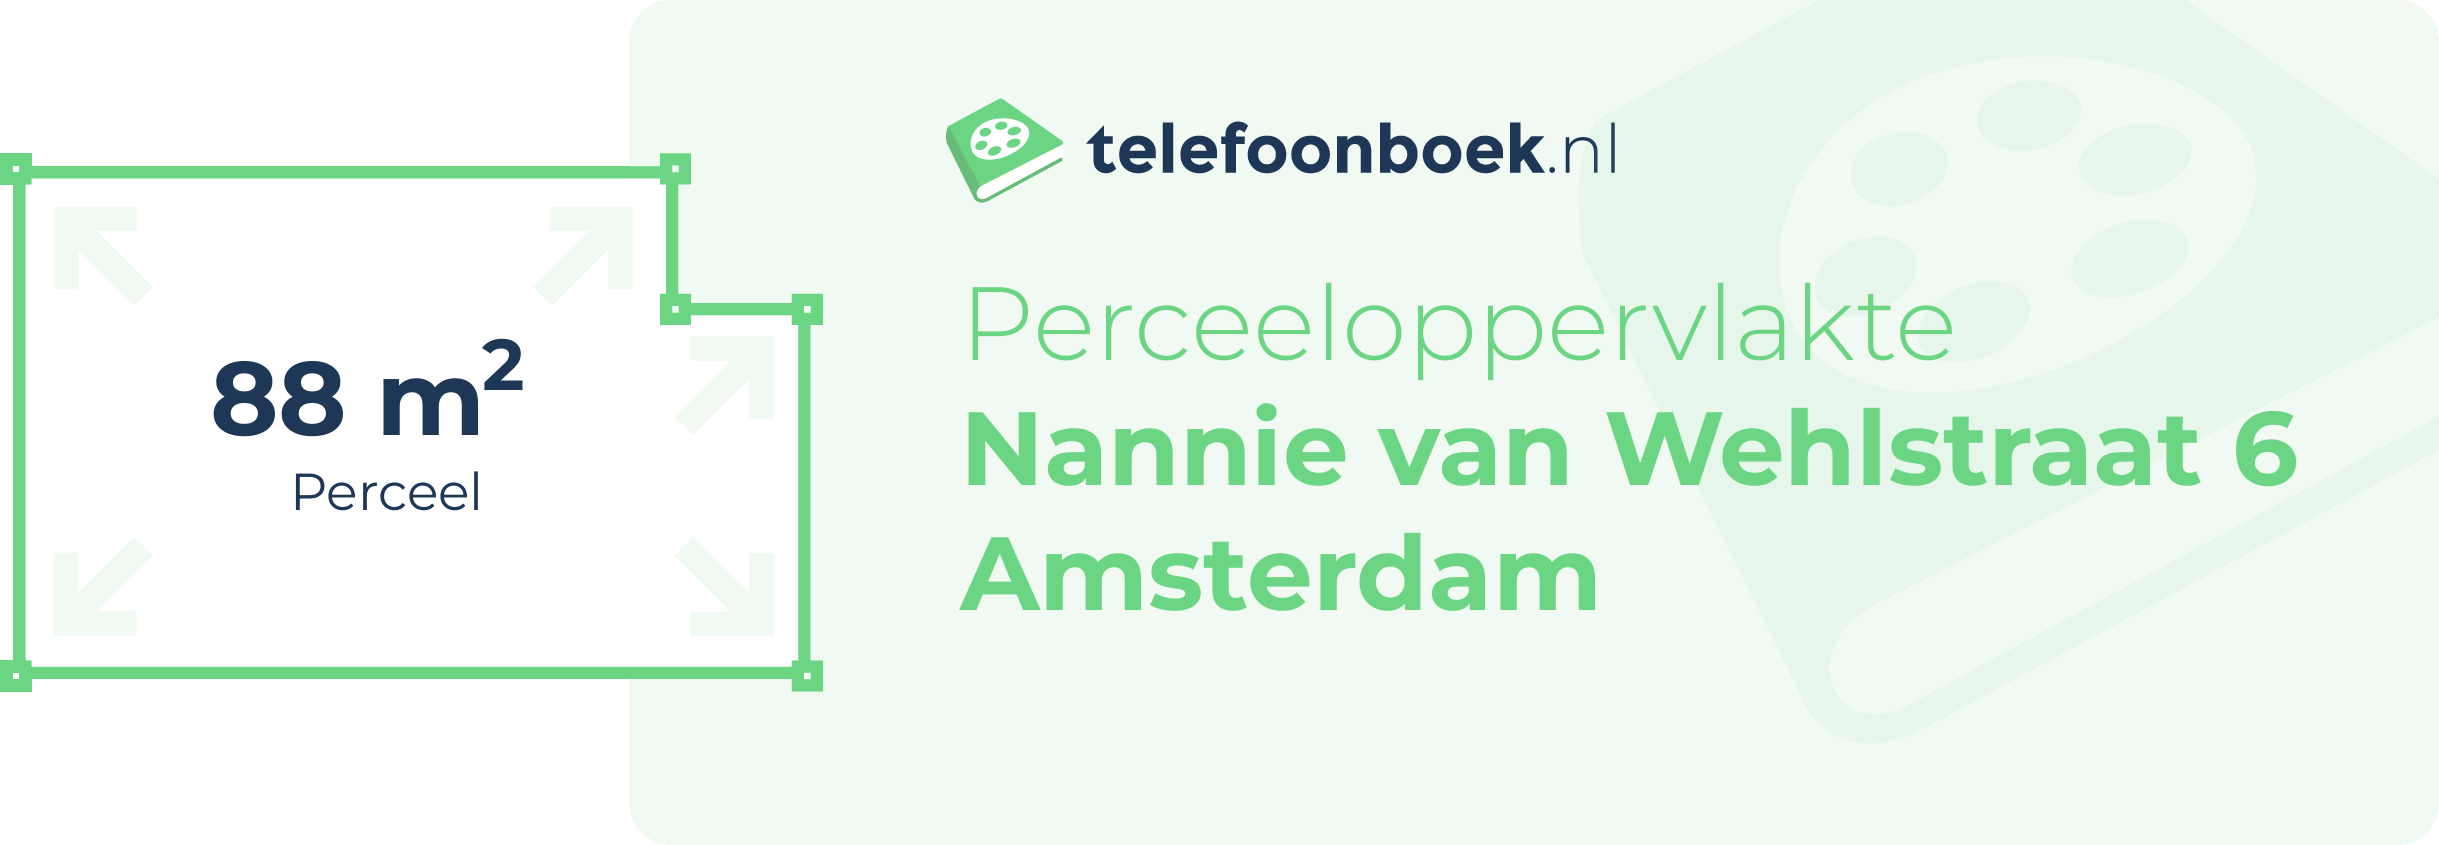 Perceeloppervlakte Nannie Van Wehlstraat 6 Amsterdam